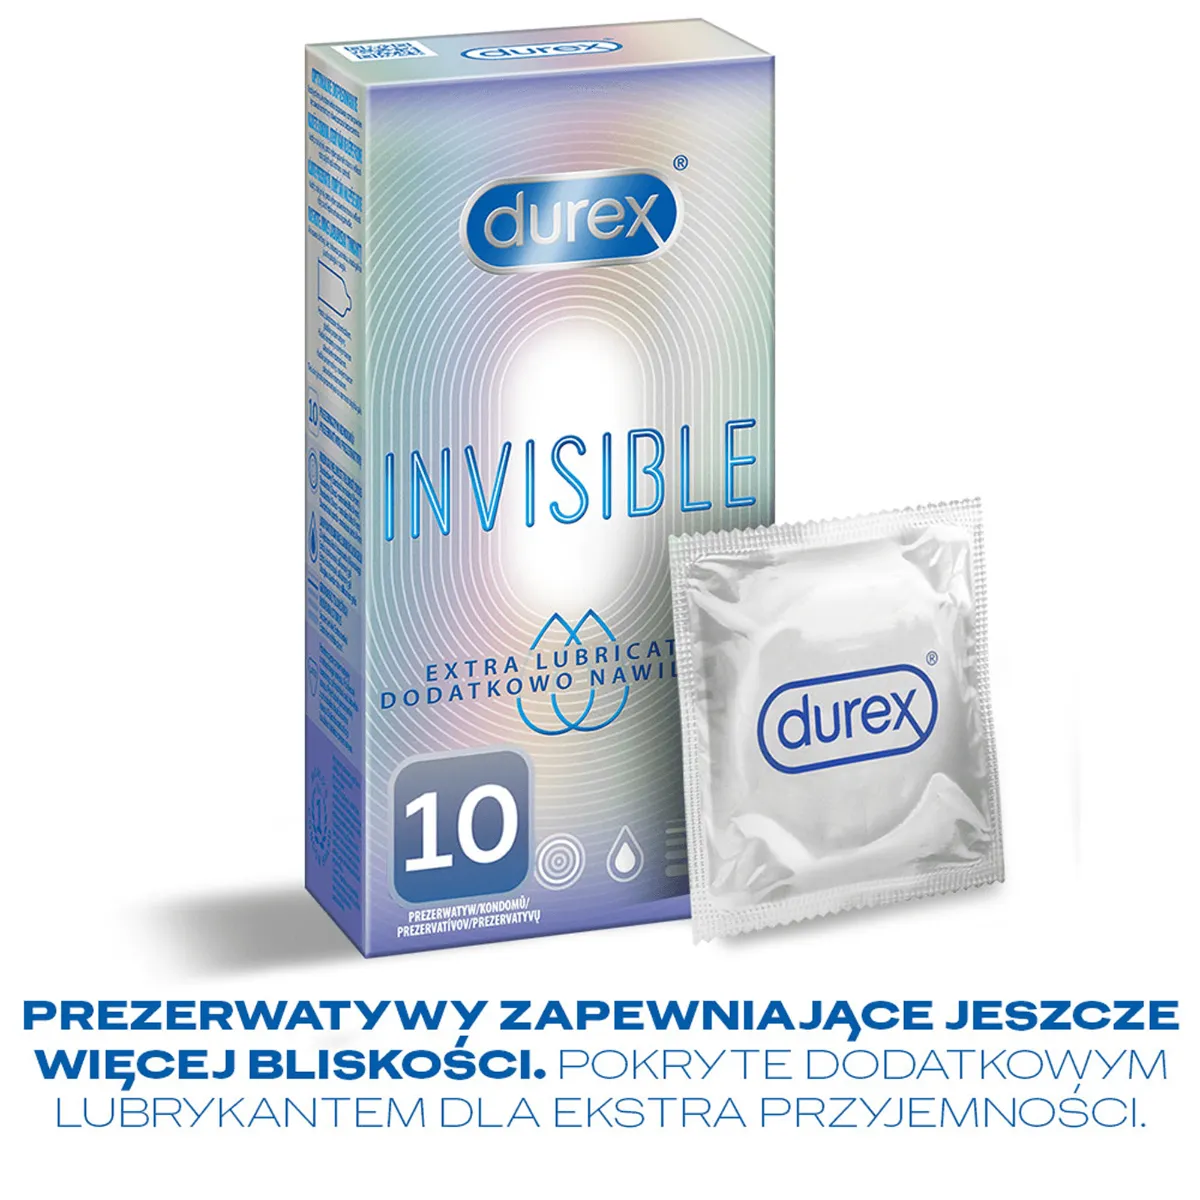 Durex Invisible, prezerwatywy extra nawilżane, 10 sztuk 